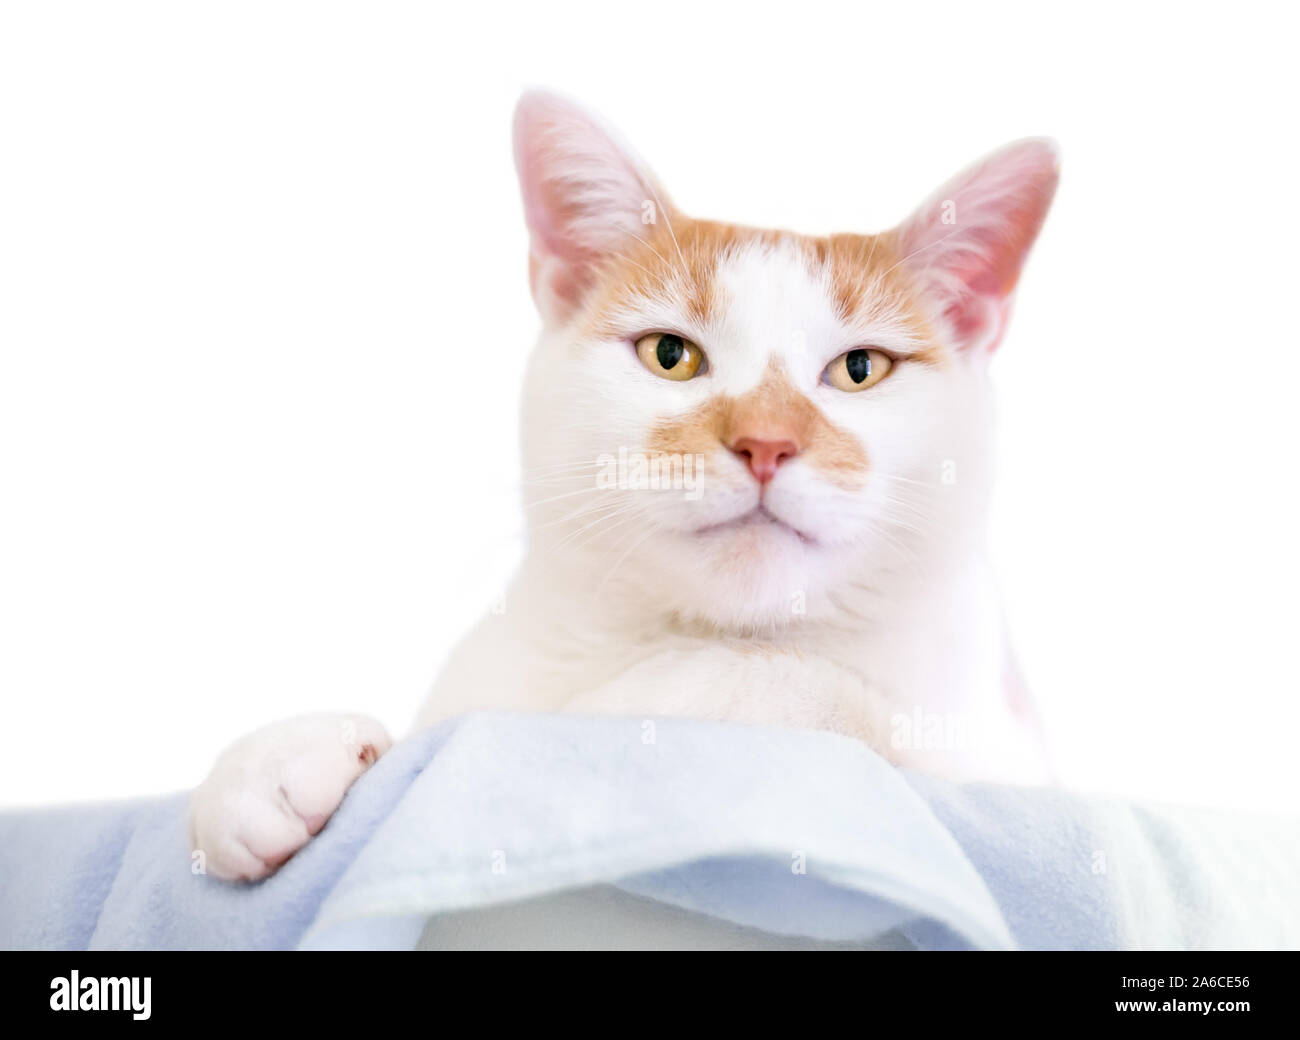 Un arancio e bianco domestico gatto Shorthair relax su una coperta Foto Stock